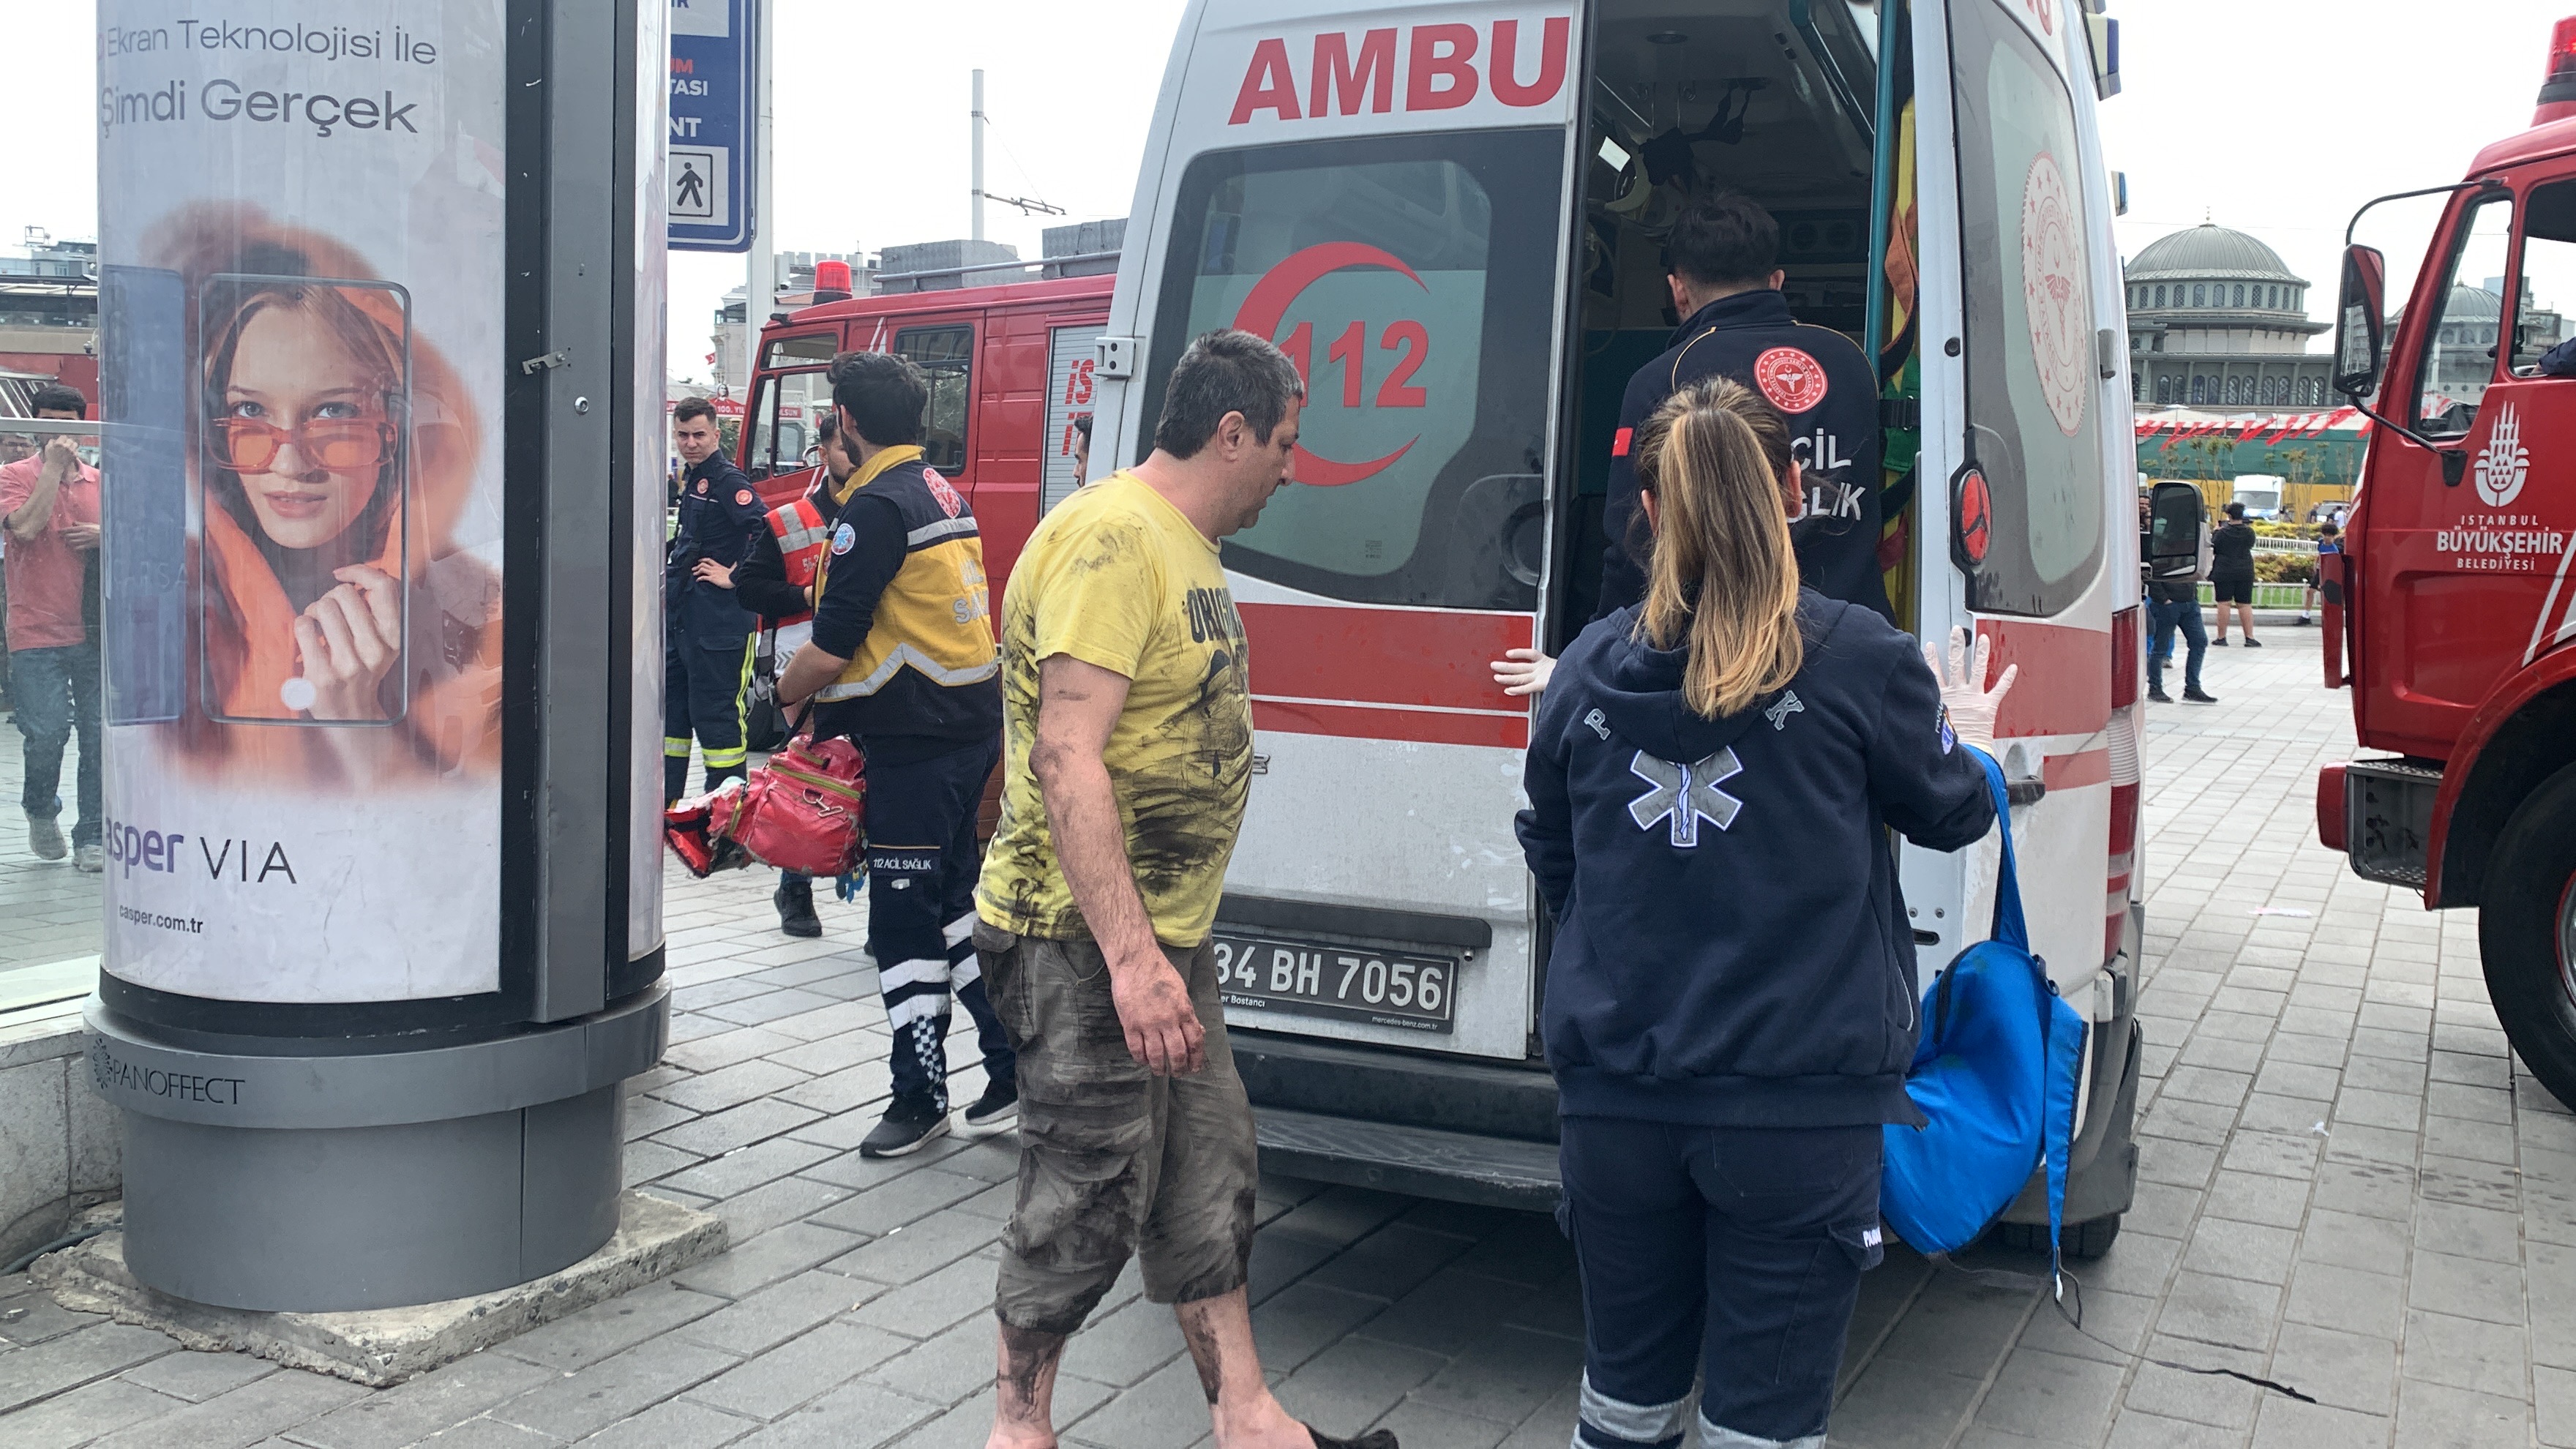 Taksim metrosunda intihar girişimi: Metronun altından yara almadan kurtarıldı